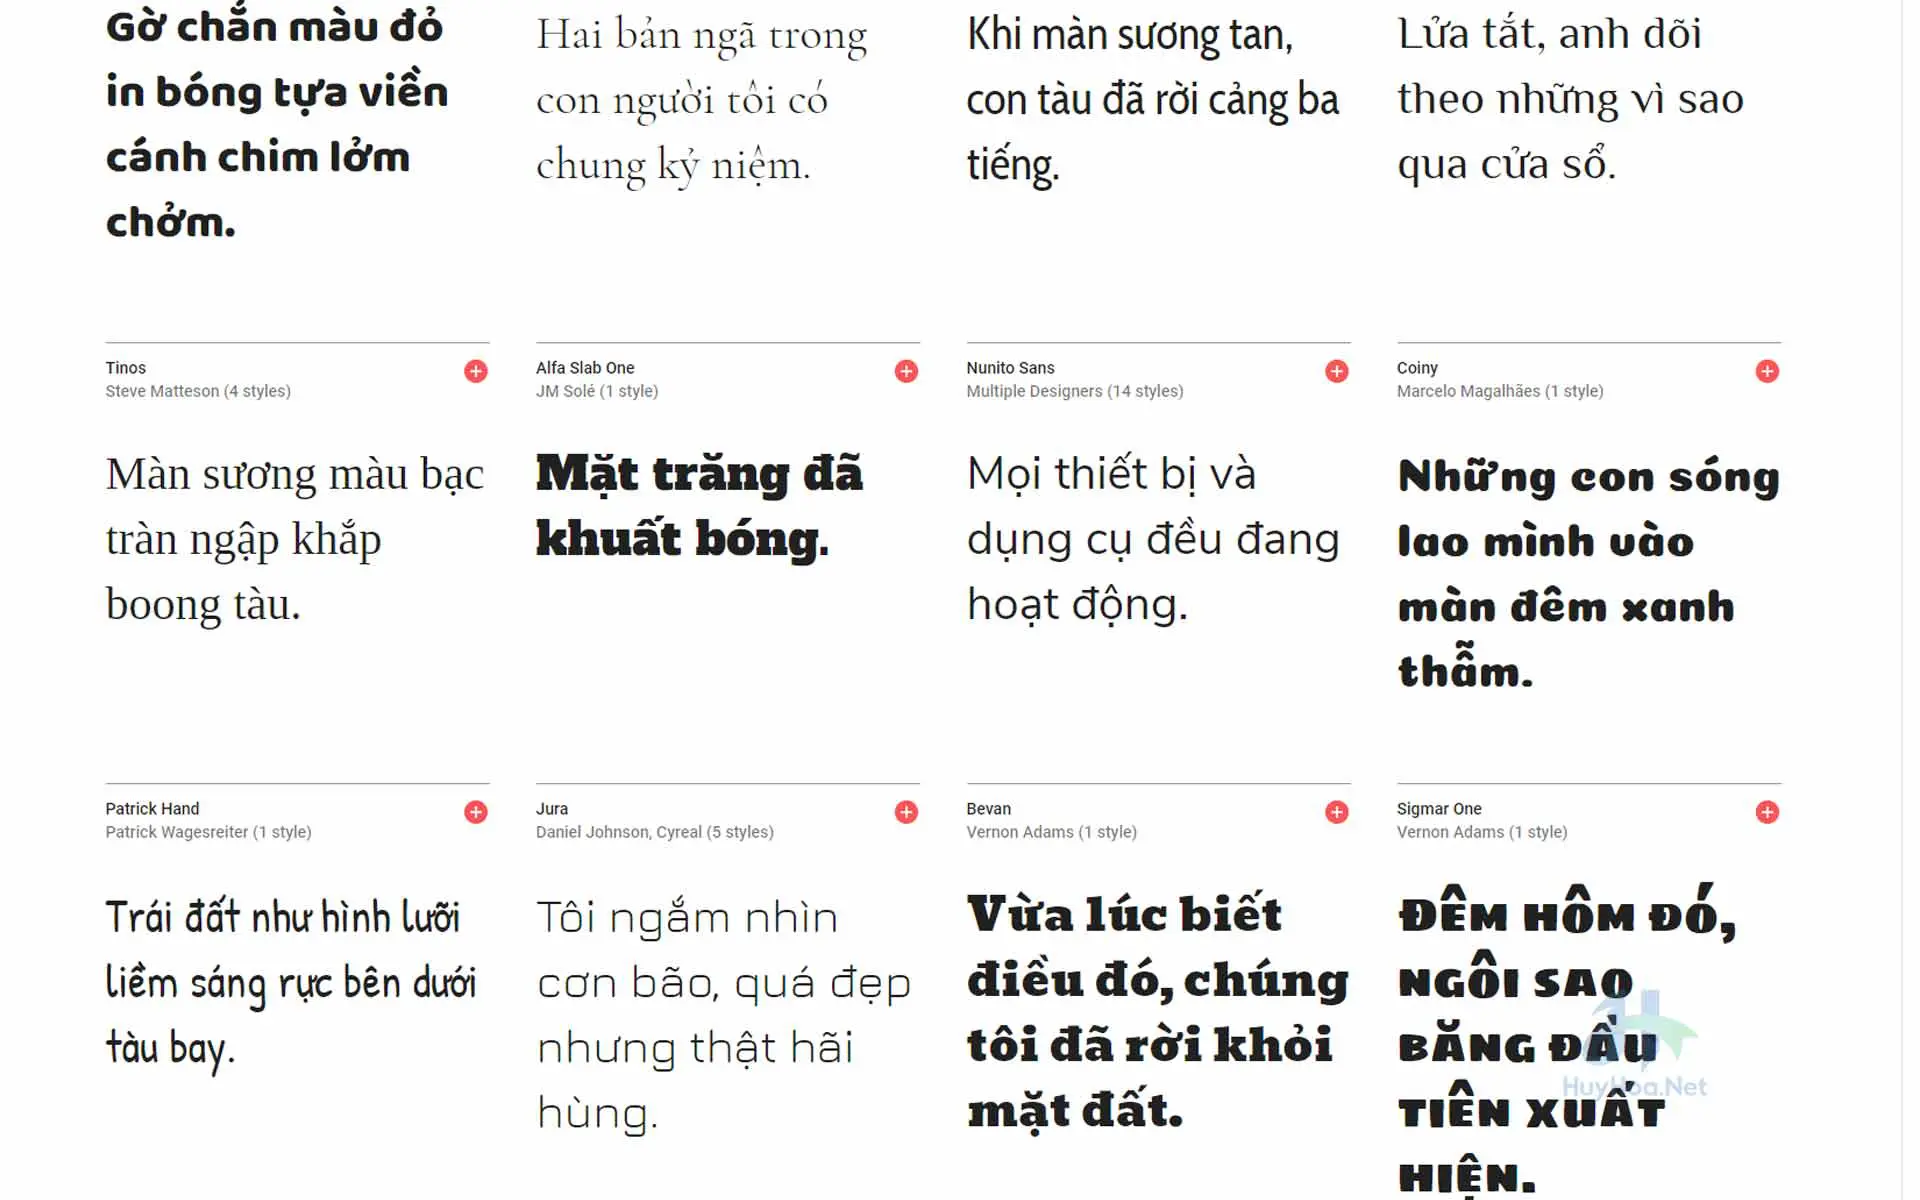 Font Việt Nam: Với sự phát triển của công nghệ, các font Việt Nam ngày càng được ưa chuộng và đáp ứng nhu cầu sáng tạo của người dùng. Việt Nam đang trở thành trung tâm sản xuất font chất lượng cao và đa dạng cho thị trường quốc tế. Điểm đặc biệt của các font Việt Nam là kết hợp giữa nét truyền thống và hiện đại, mang đến cho người dùng những trải nghiệm độc đáo và mới lạ.